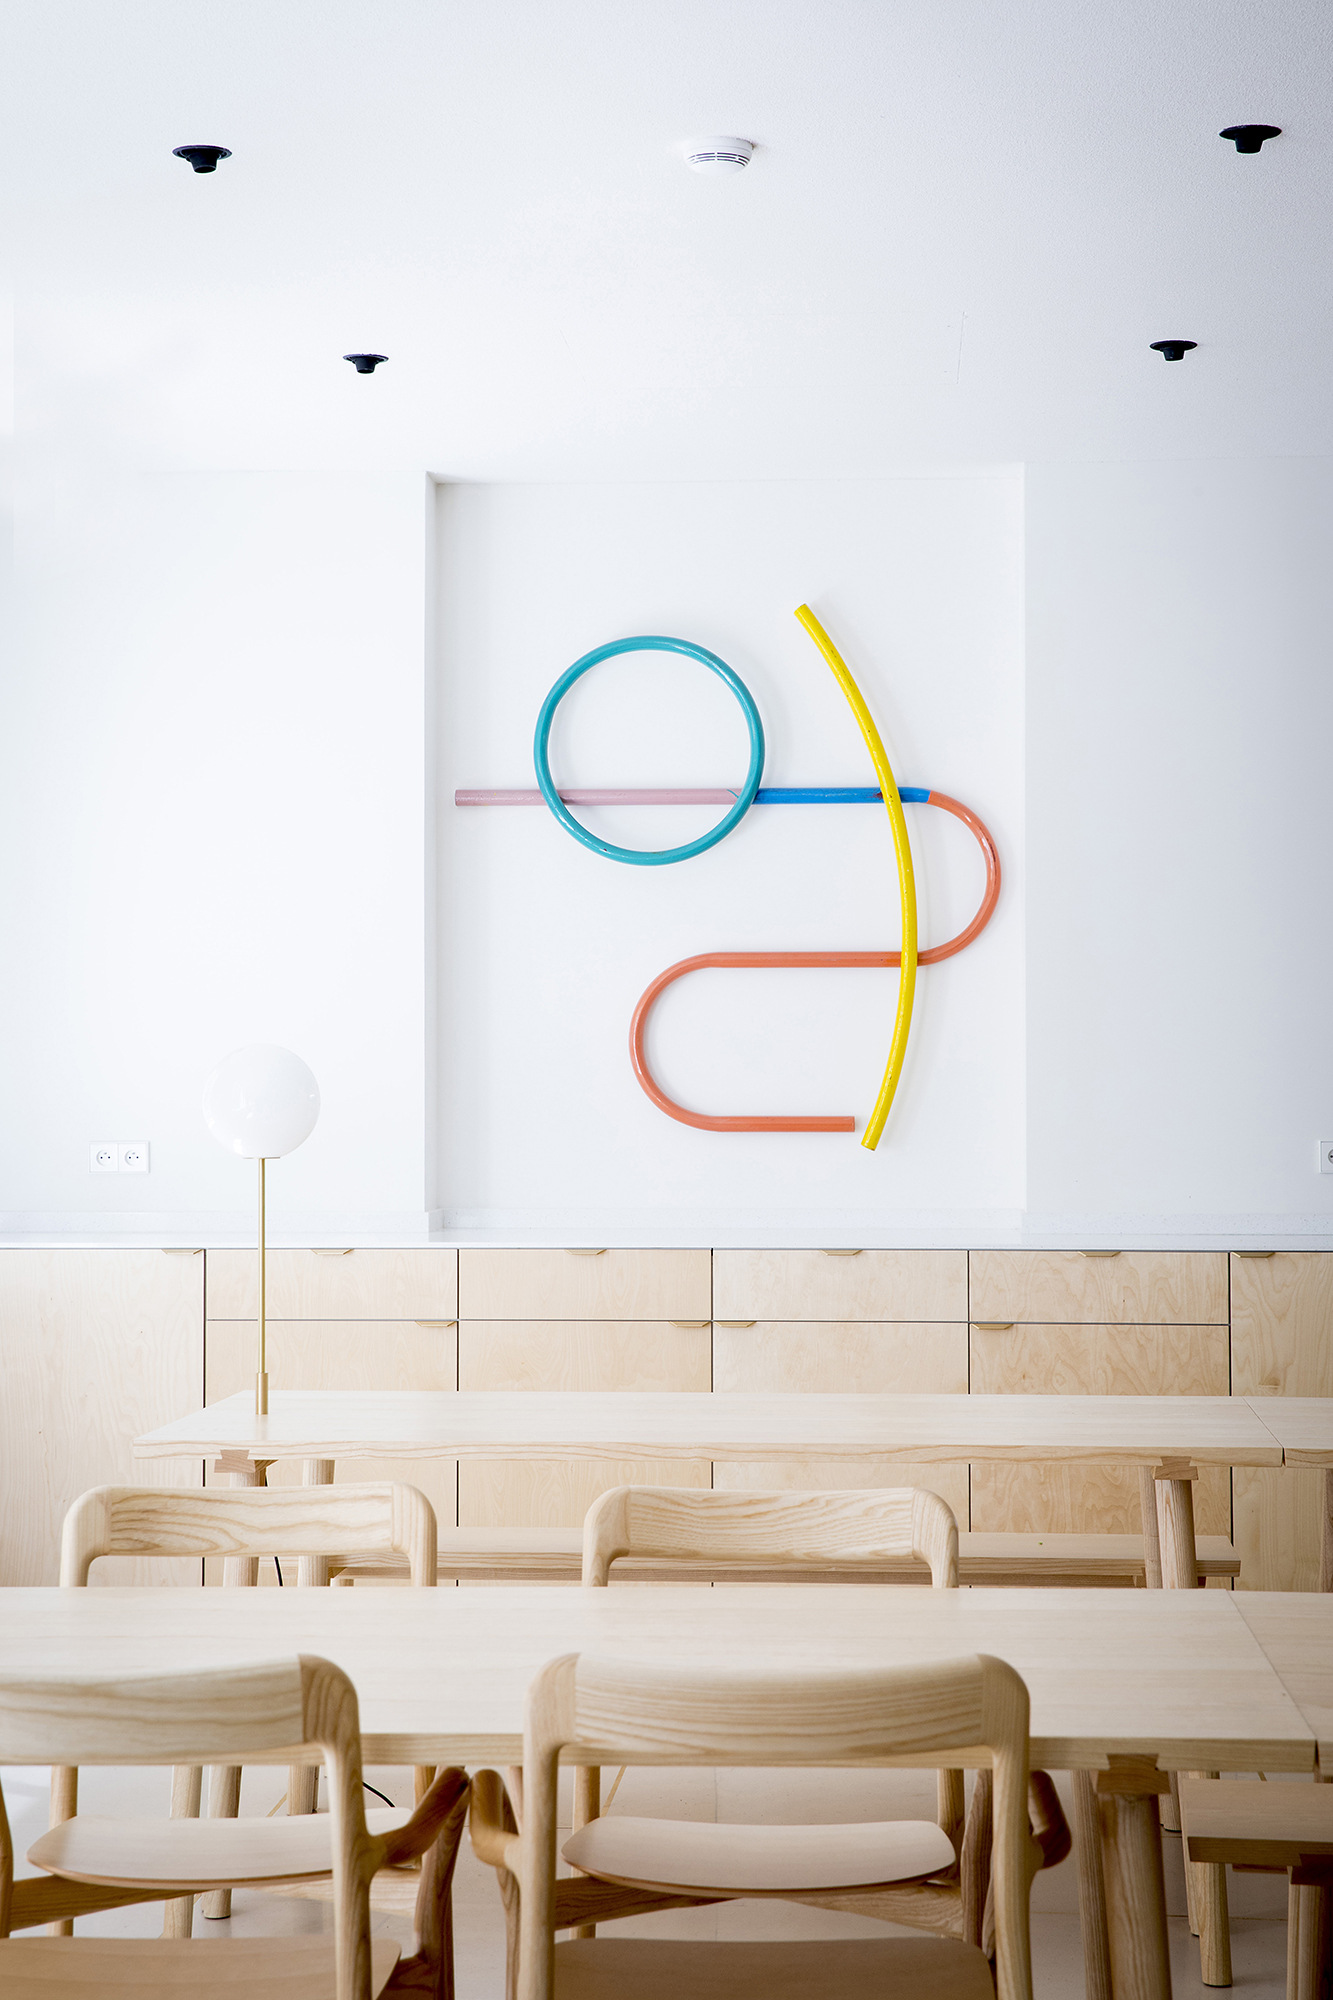 图片[2]|Fabernovel集团巴黎办事处|ART-Arrakis | 建筑室内设计的创新与灵感